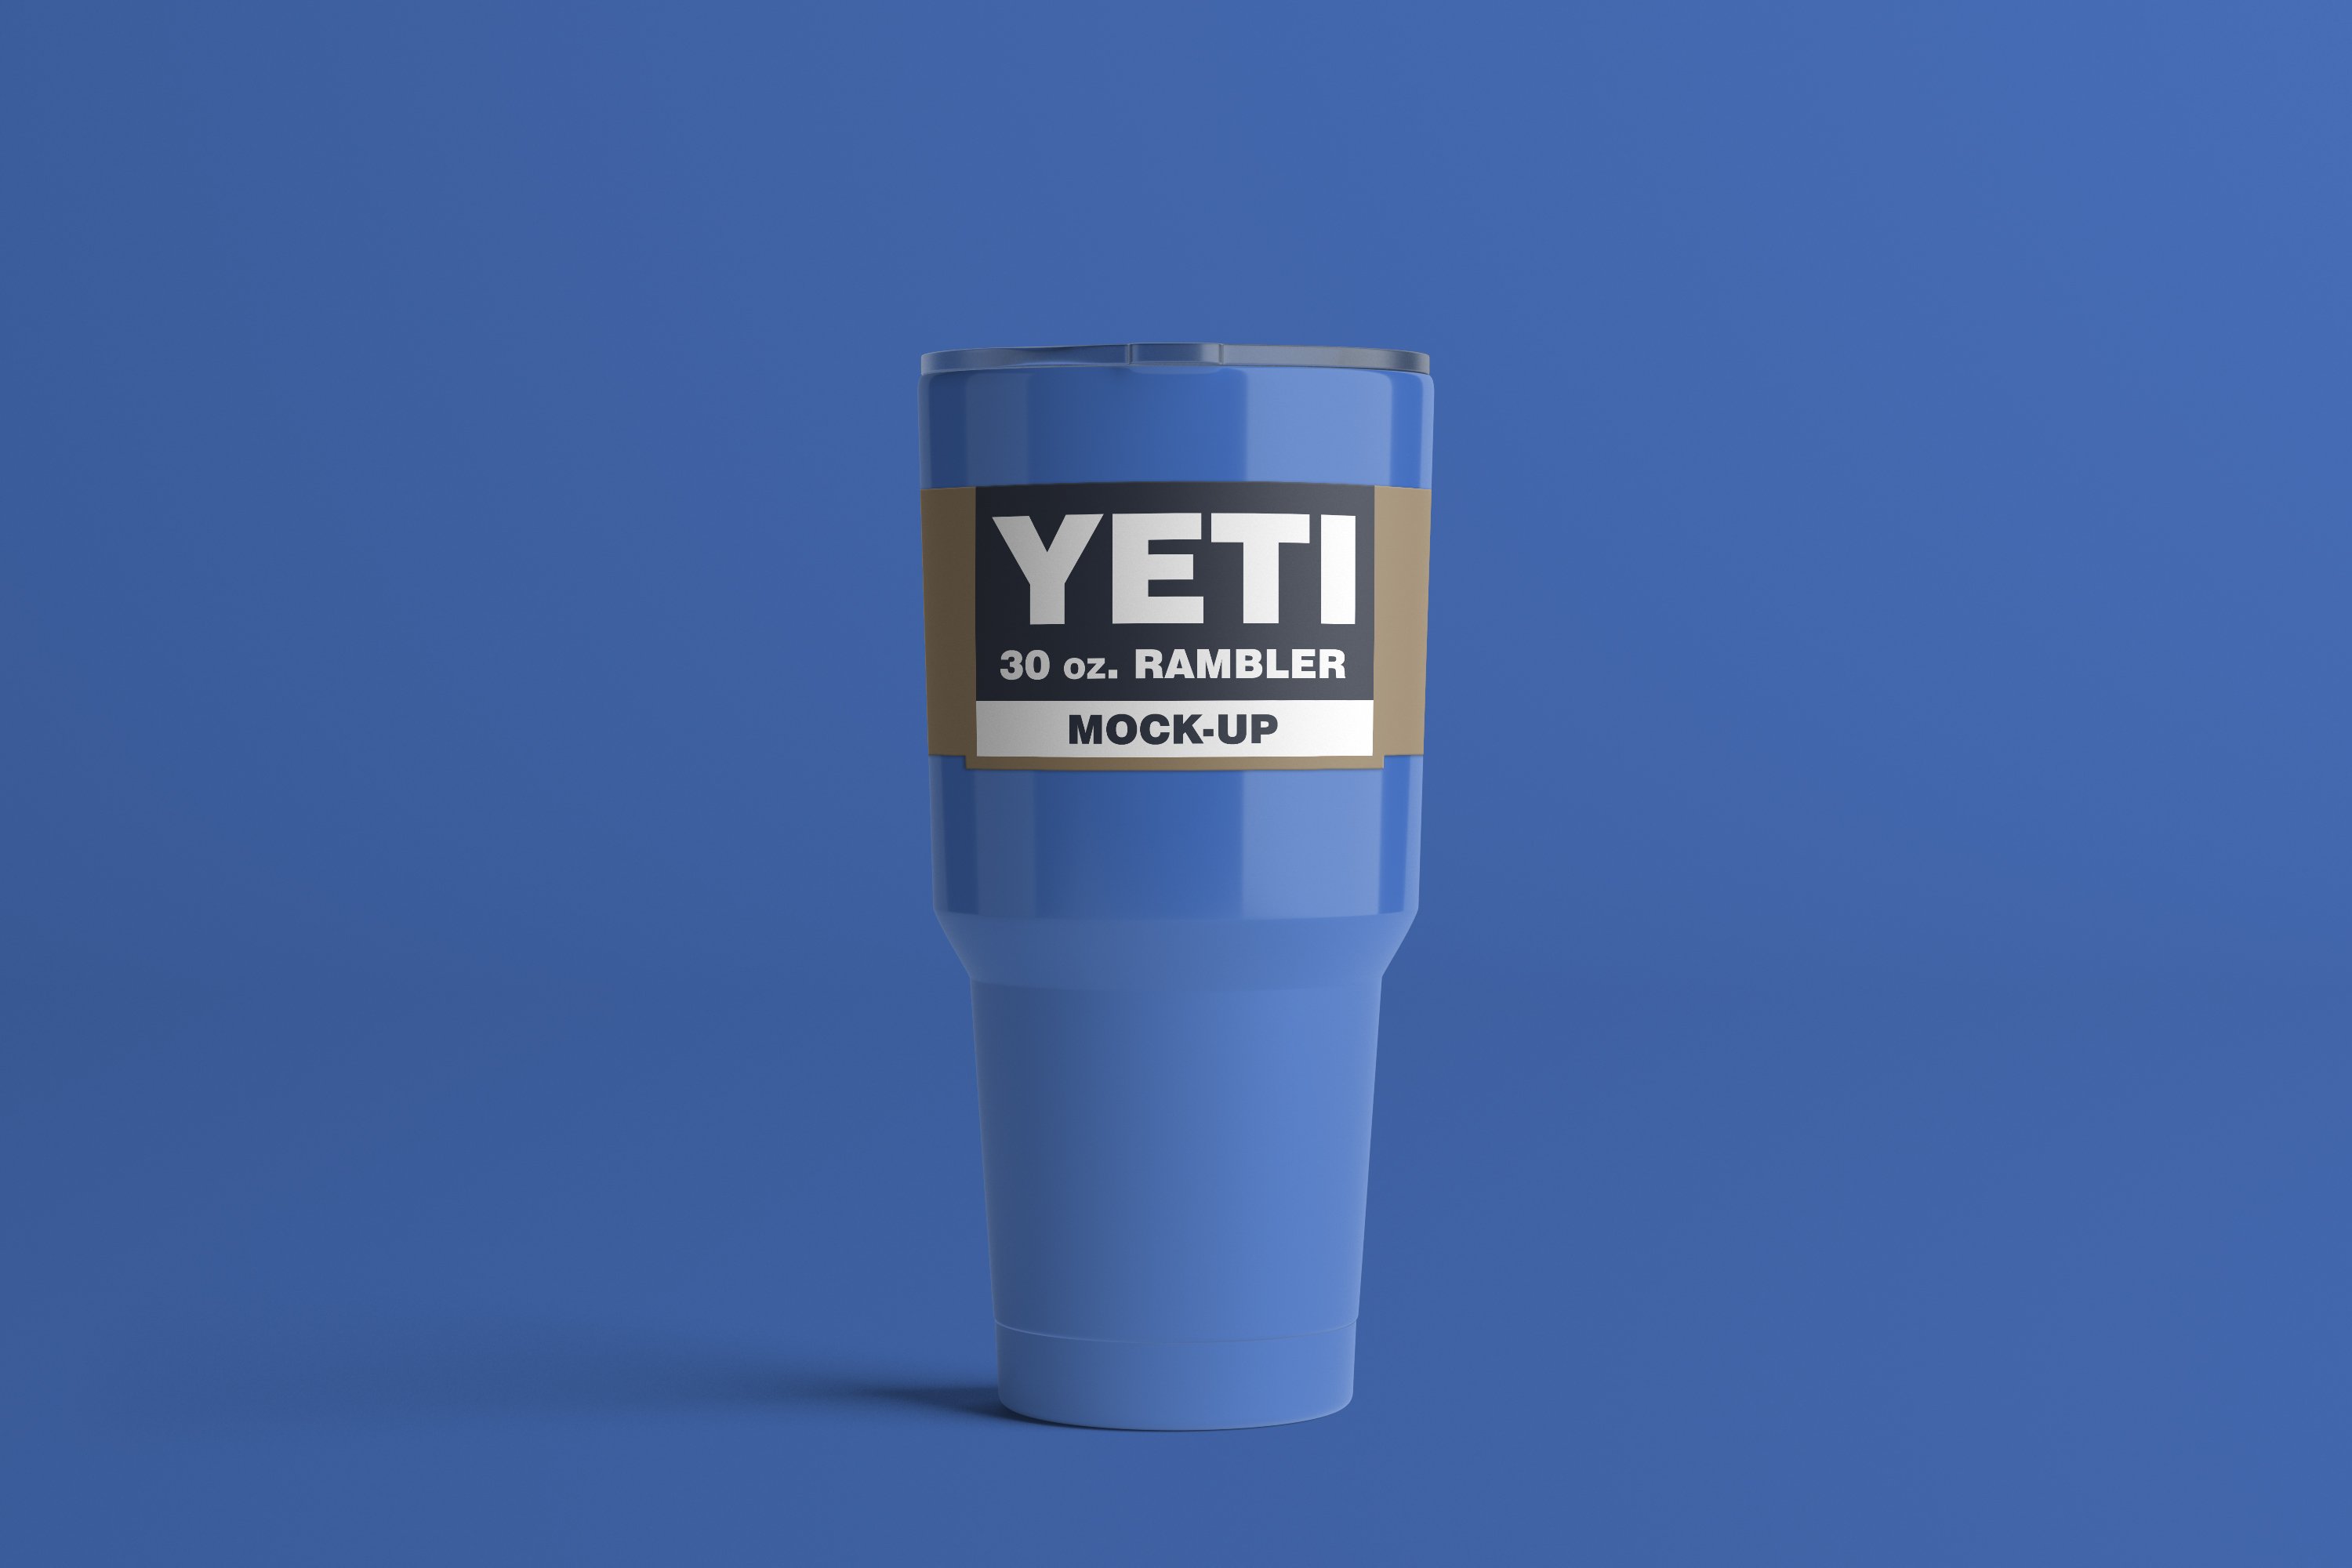 50%] Yeti Cup Mock-Up Bundle #1 – MasterBundles